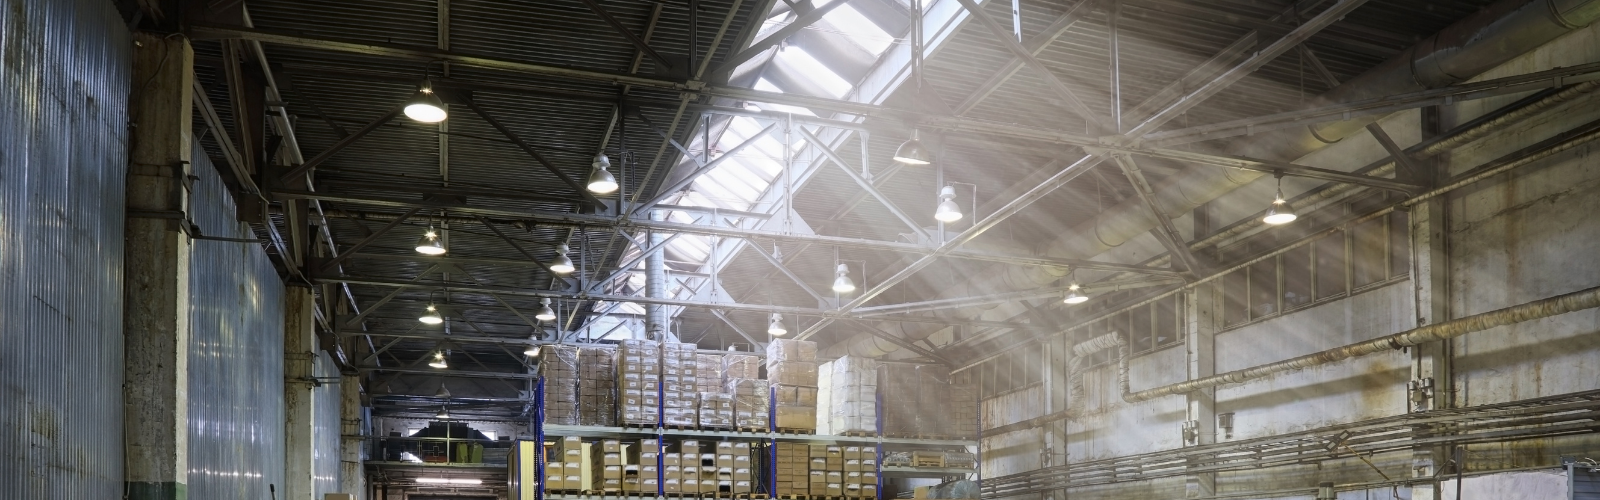 older warehouse lighting